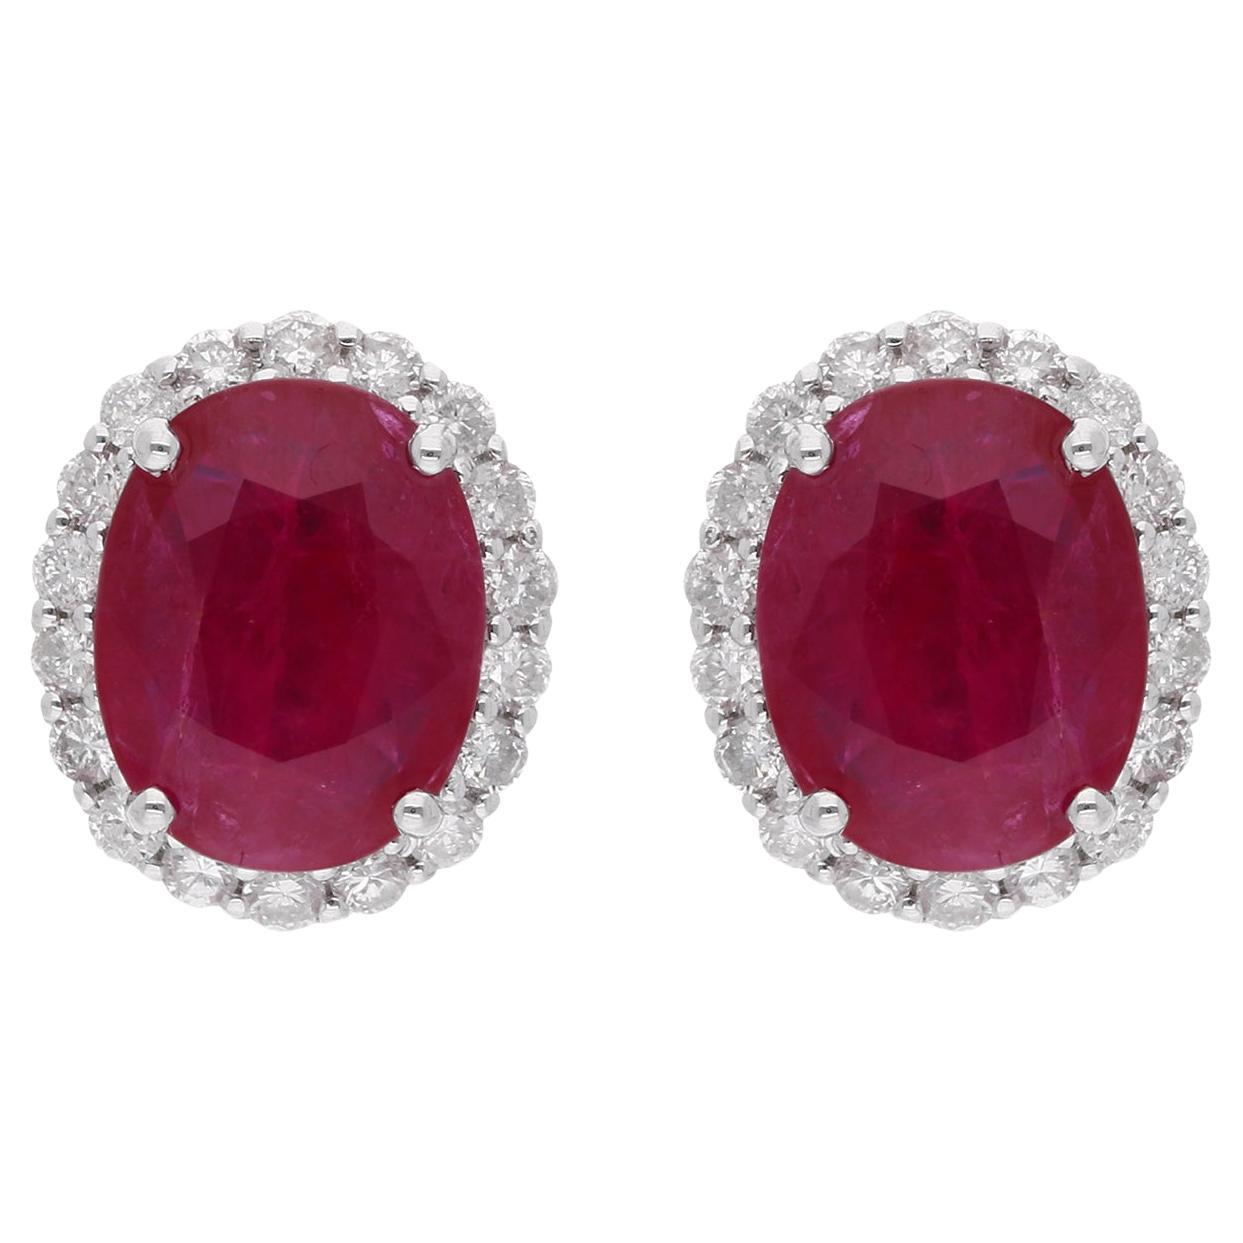 Oval Shape Ruby Gemstone Stud Earrings Diamond 18 Karat White Gold Fine Jewelry For Sale